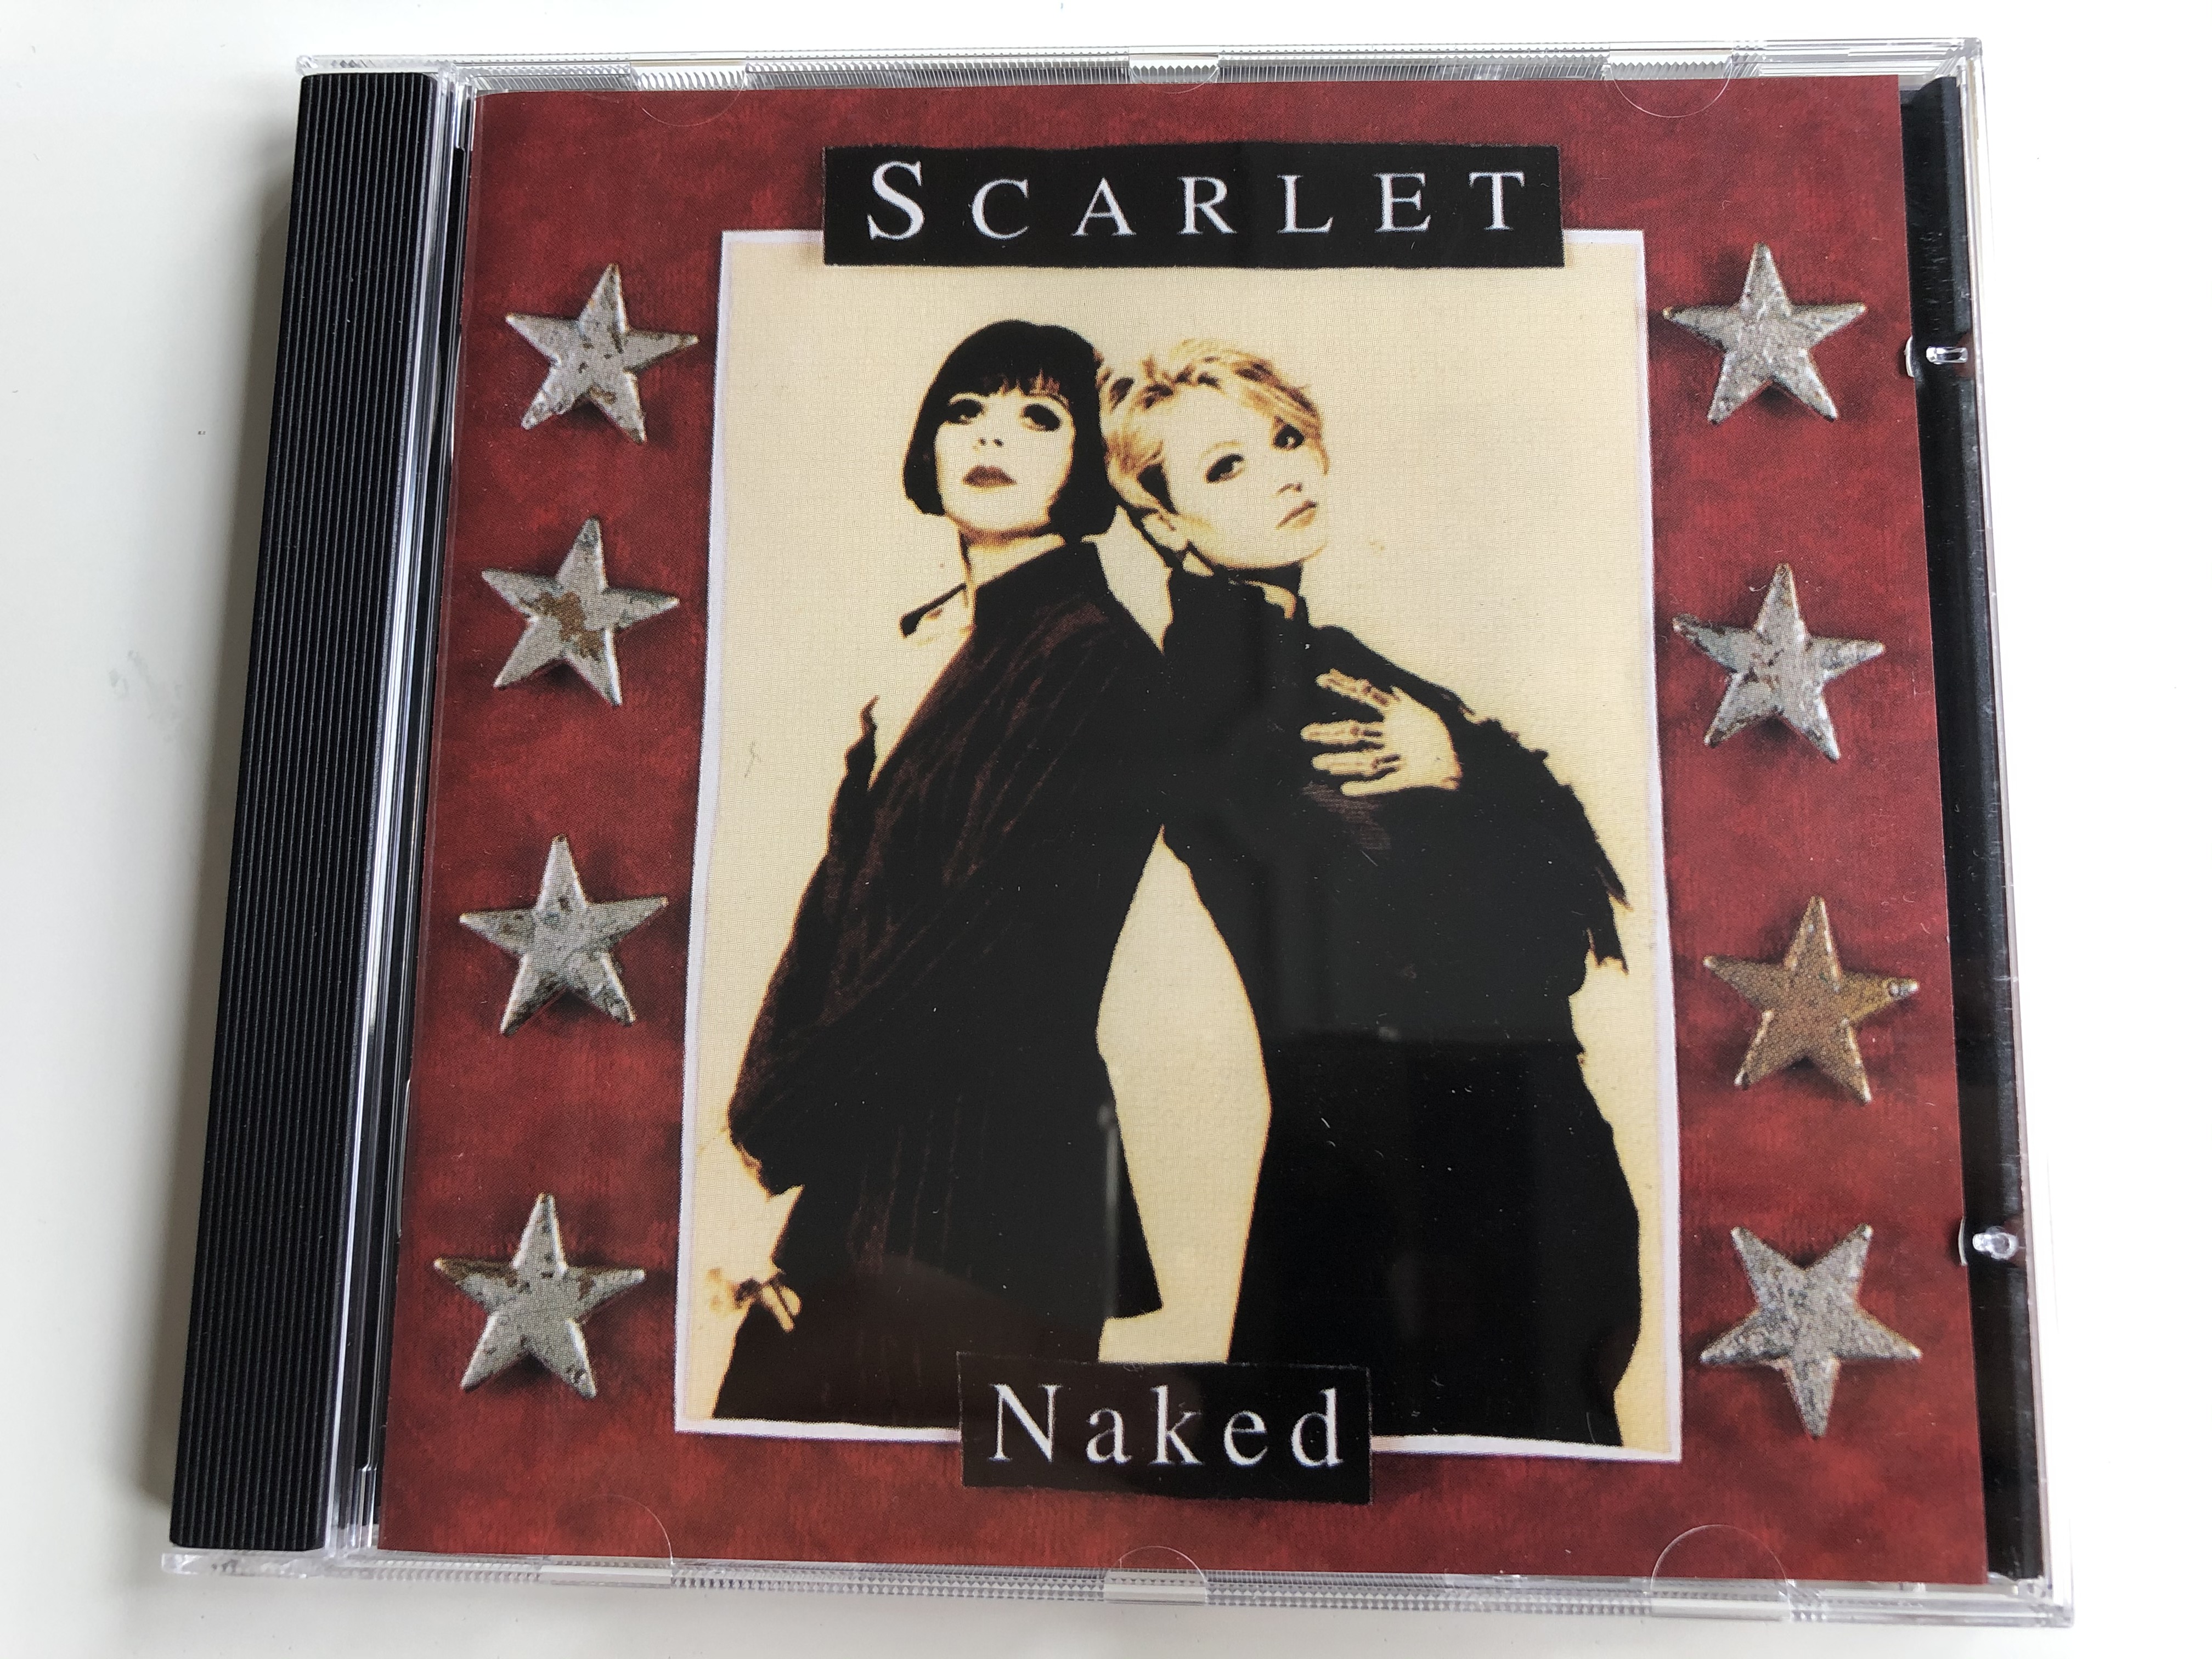 scarlet-naked-wea-audio-cd-1995-4509-97643-2-1-.jpg